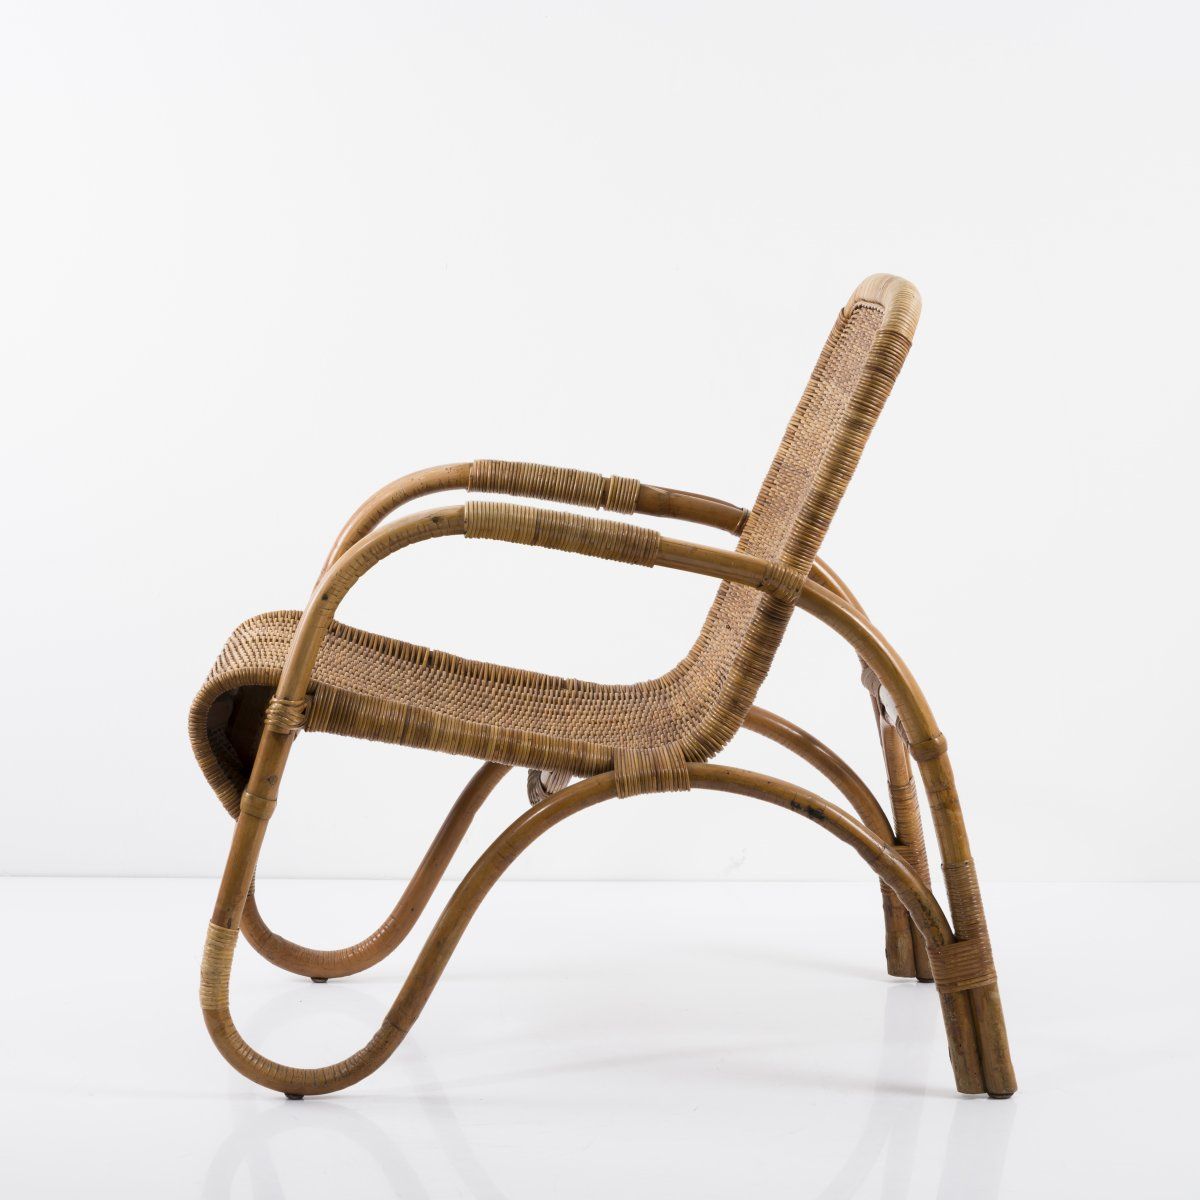 Null Erich Dieckmann（风格），柳条扶手椅，1930年代，高77.5 x 58 x 79.5厘米。竹制藤条，藤织品。